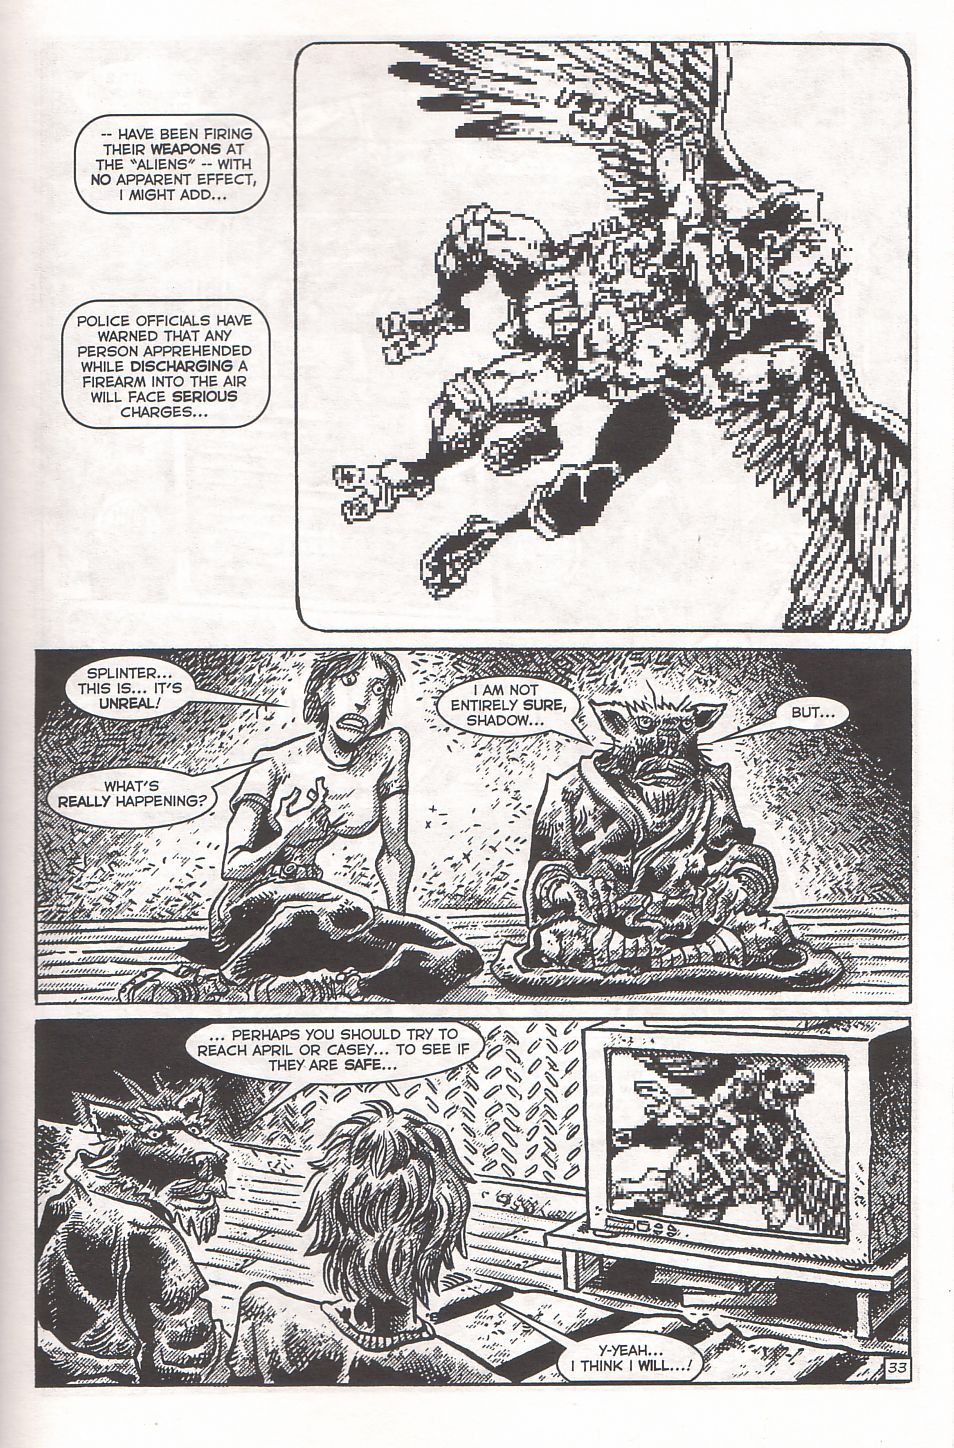 Read online TMNT: Teenage Mutant Ninja Turtles comic -  Issue #3 - 35